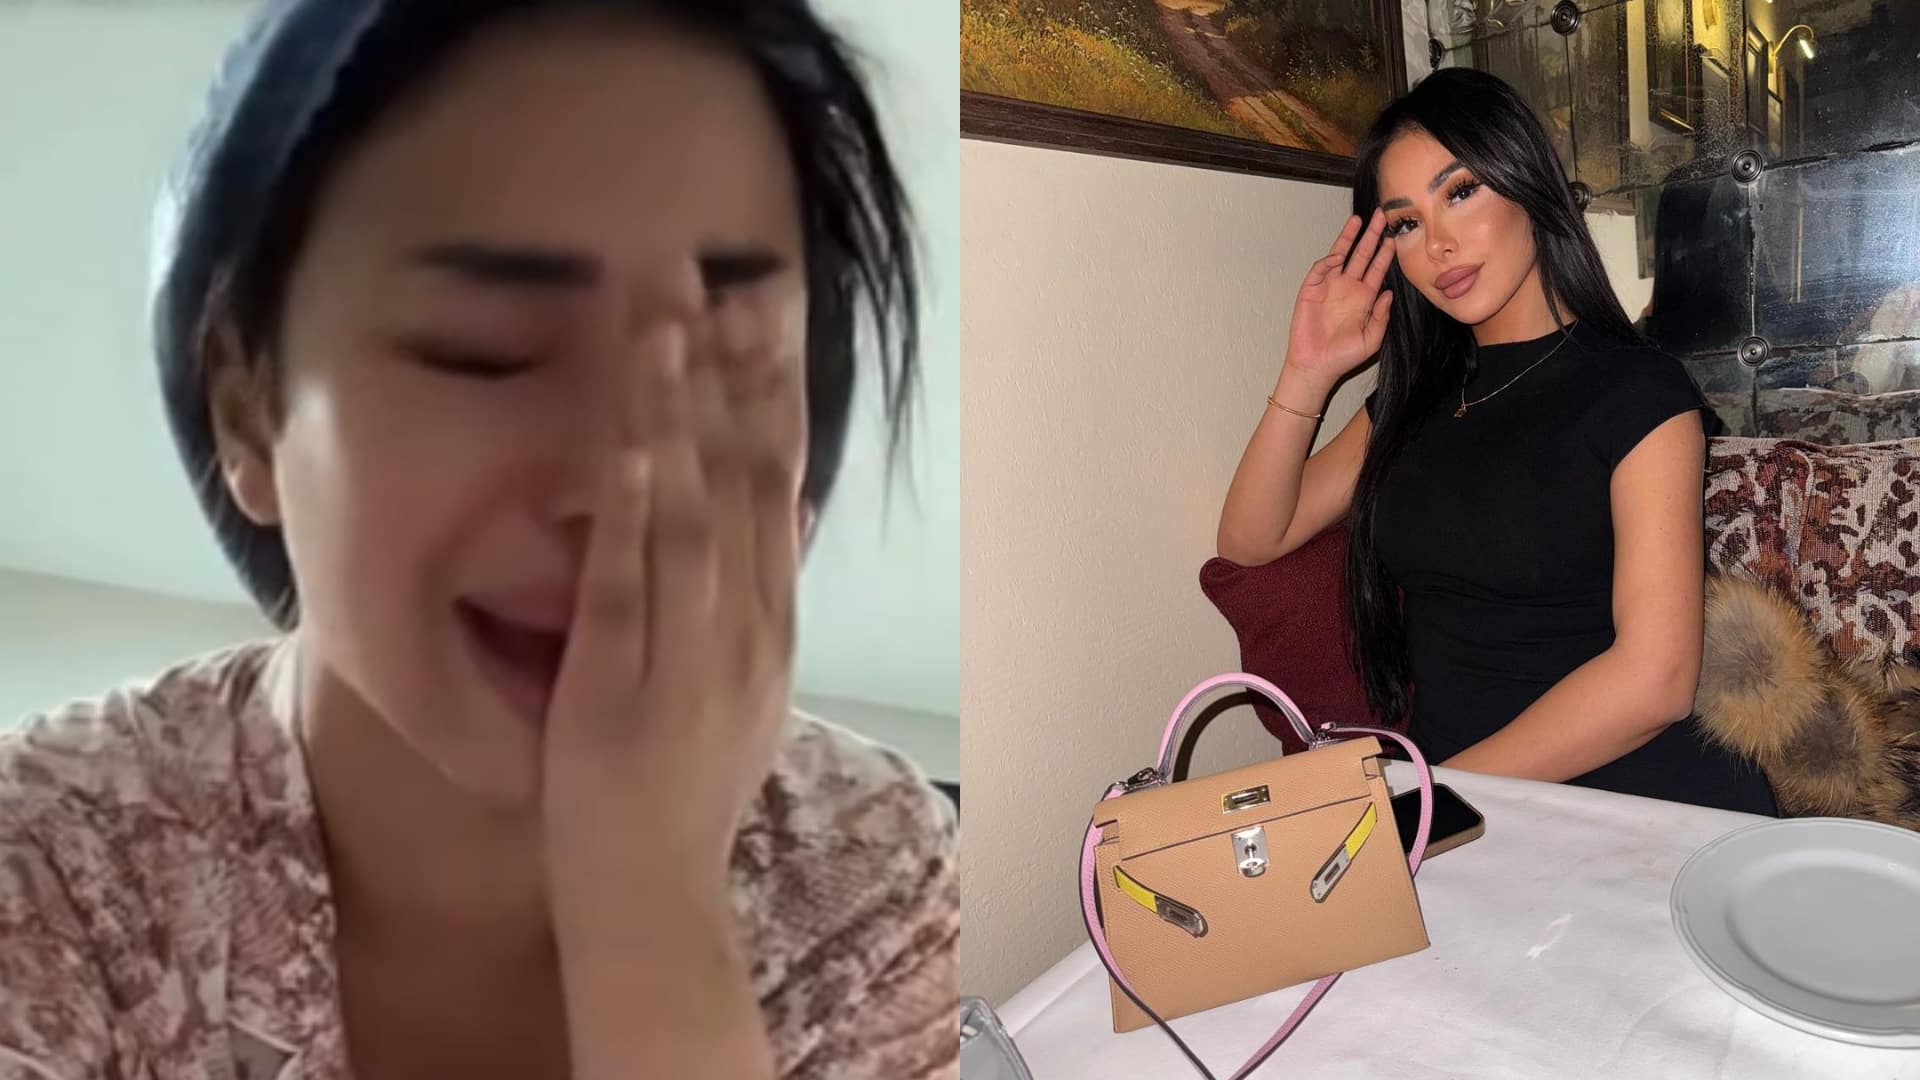 "J’ai honte" : Maeva Ghennam poste par erreur une vidéo d’elle dans son plus simple appareil et fond en larmes